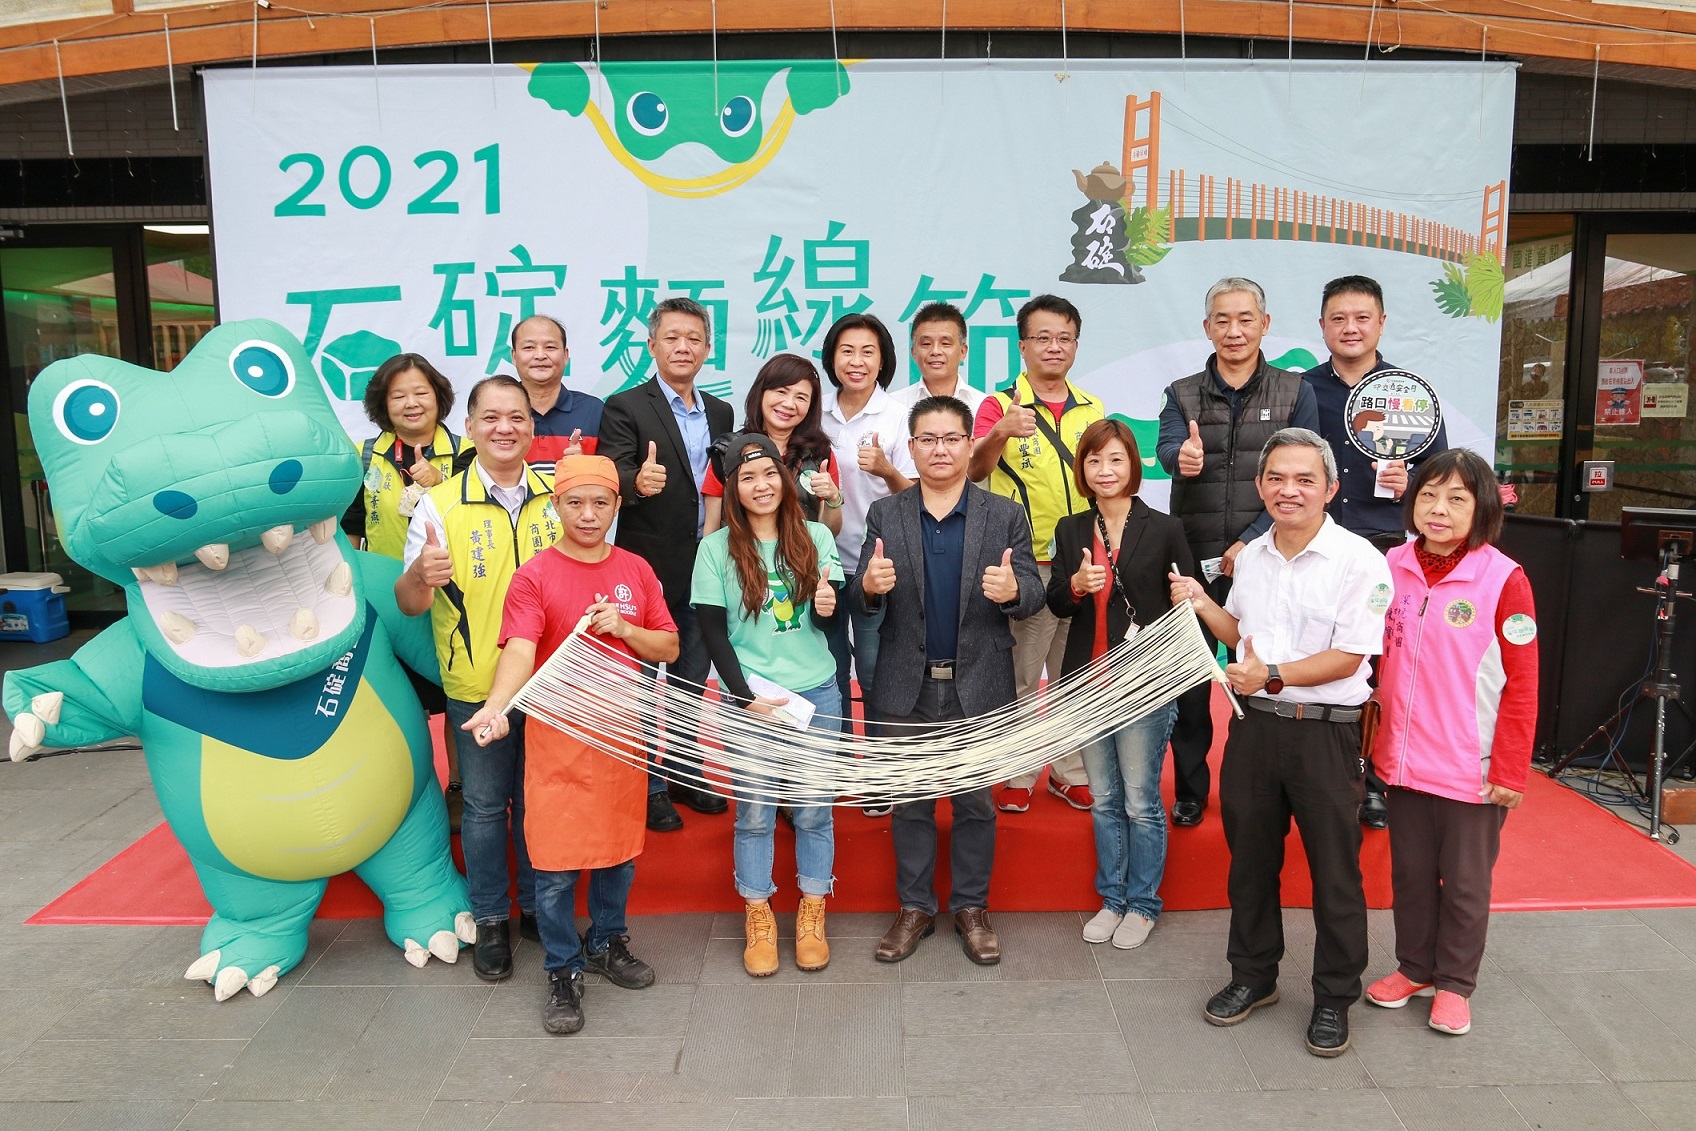 新北市商圈活動將由石碇商圈打頭陣，以吉祥物「淡定鱷」為主題，於7月15日至17日舉辦石碇鱷魚節